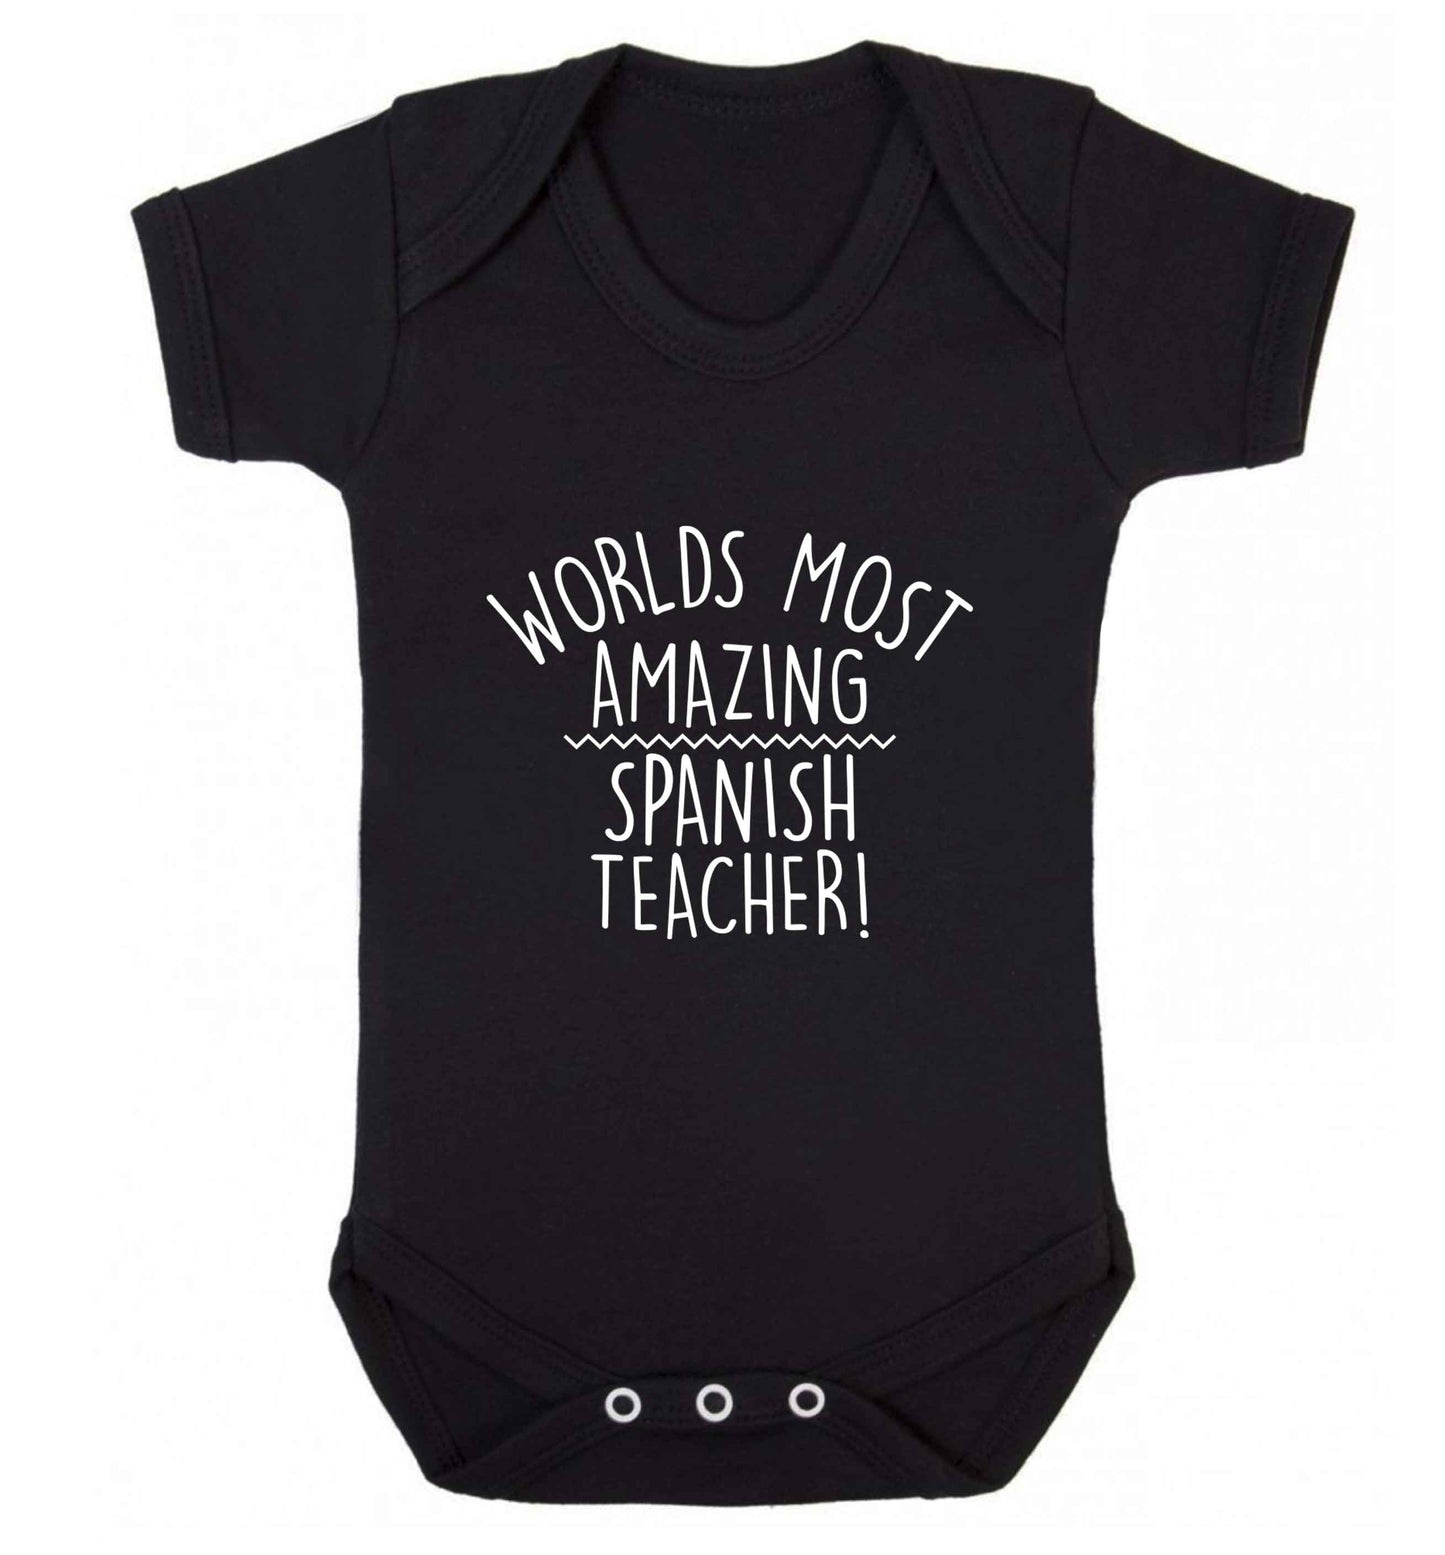 Worlds most amazing Spanish teacher baby vest black 18-24 months